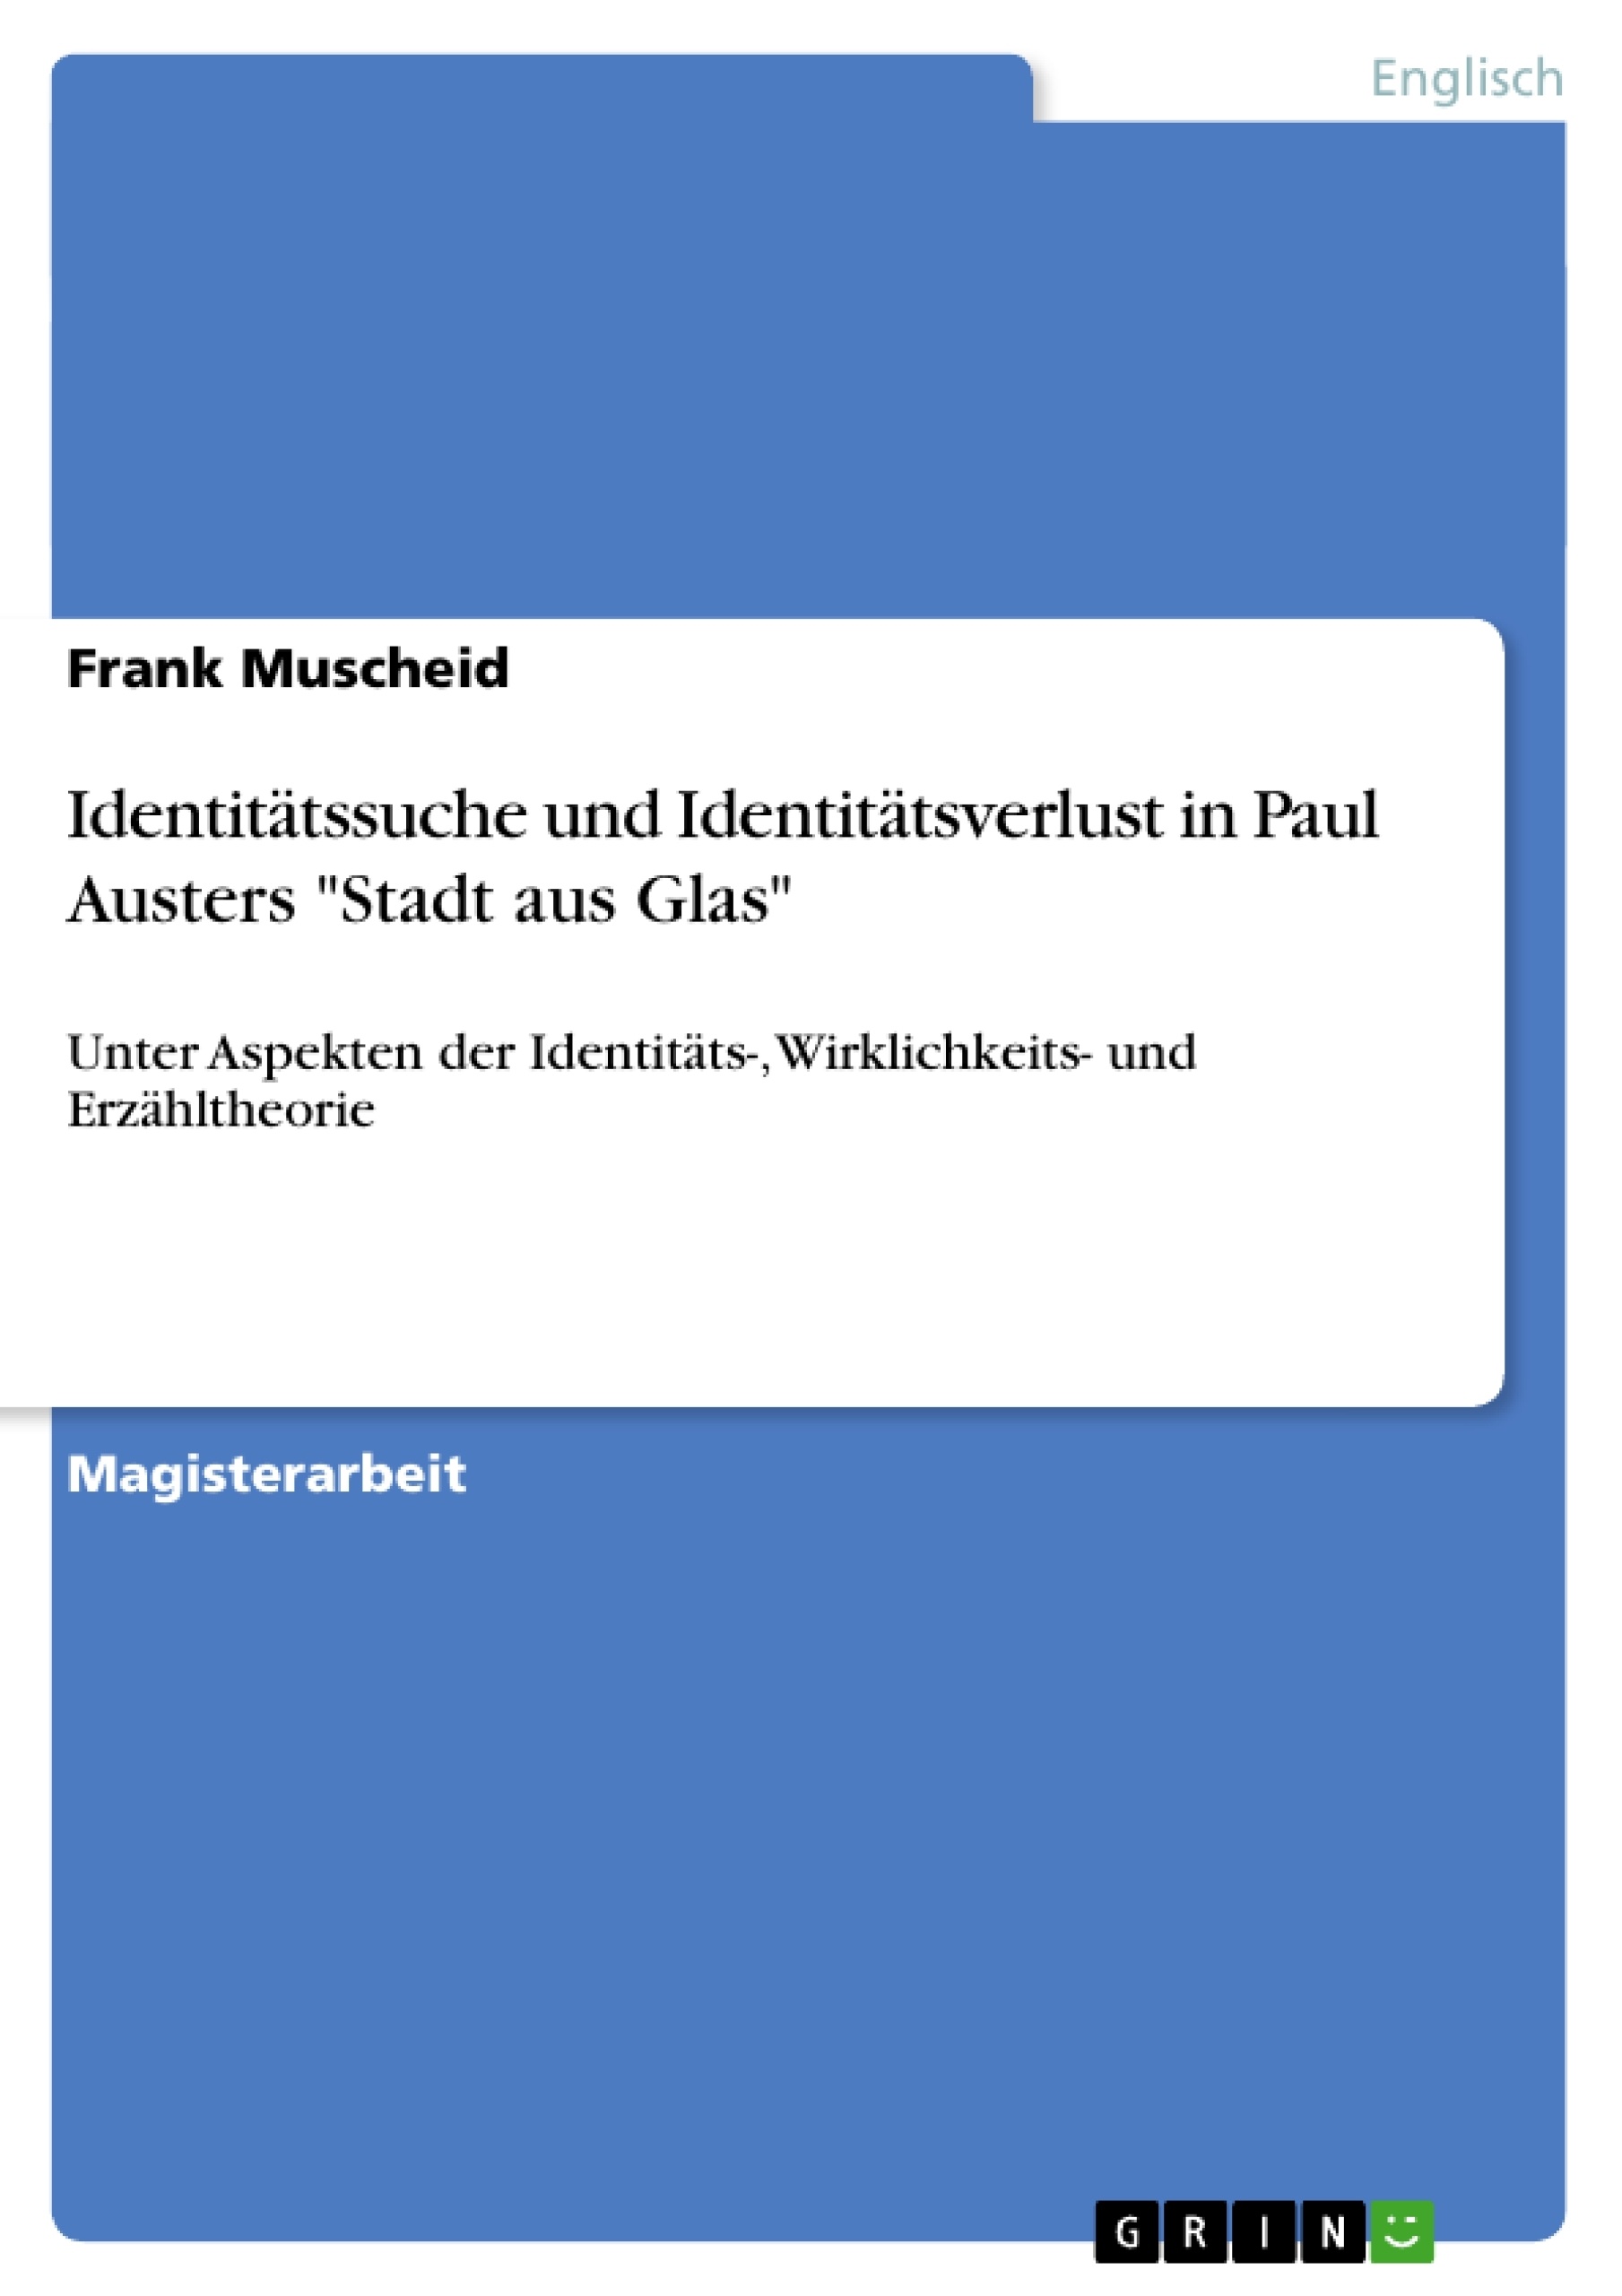 Titre: Identitätssuche und Identitätsverlust in Paul Austers "Stadt aus Glas"